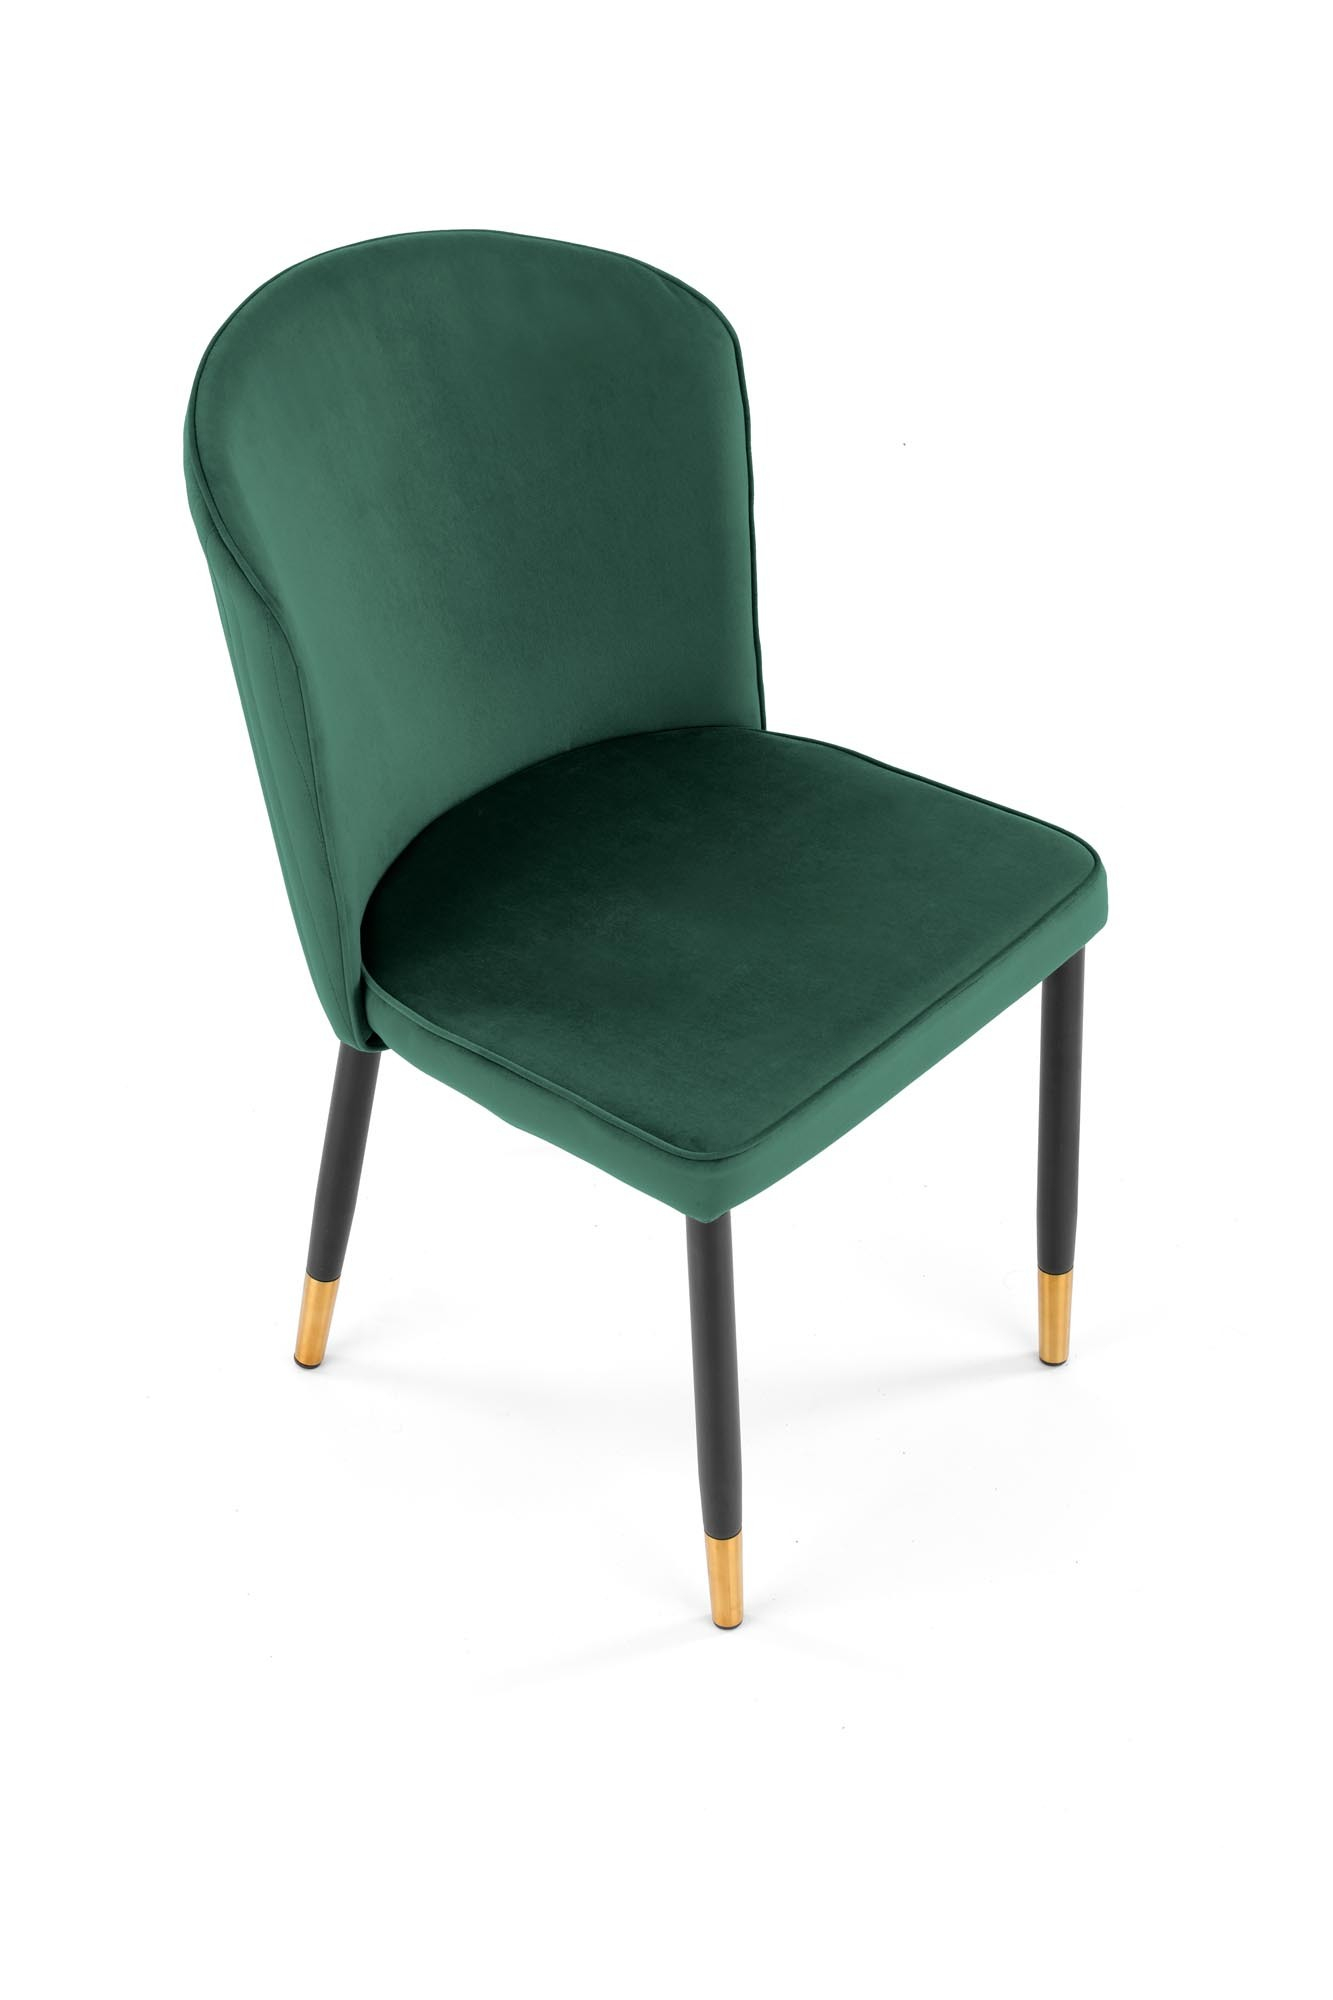 K446 krzesło ciemny zielony